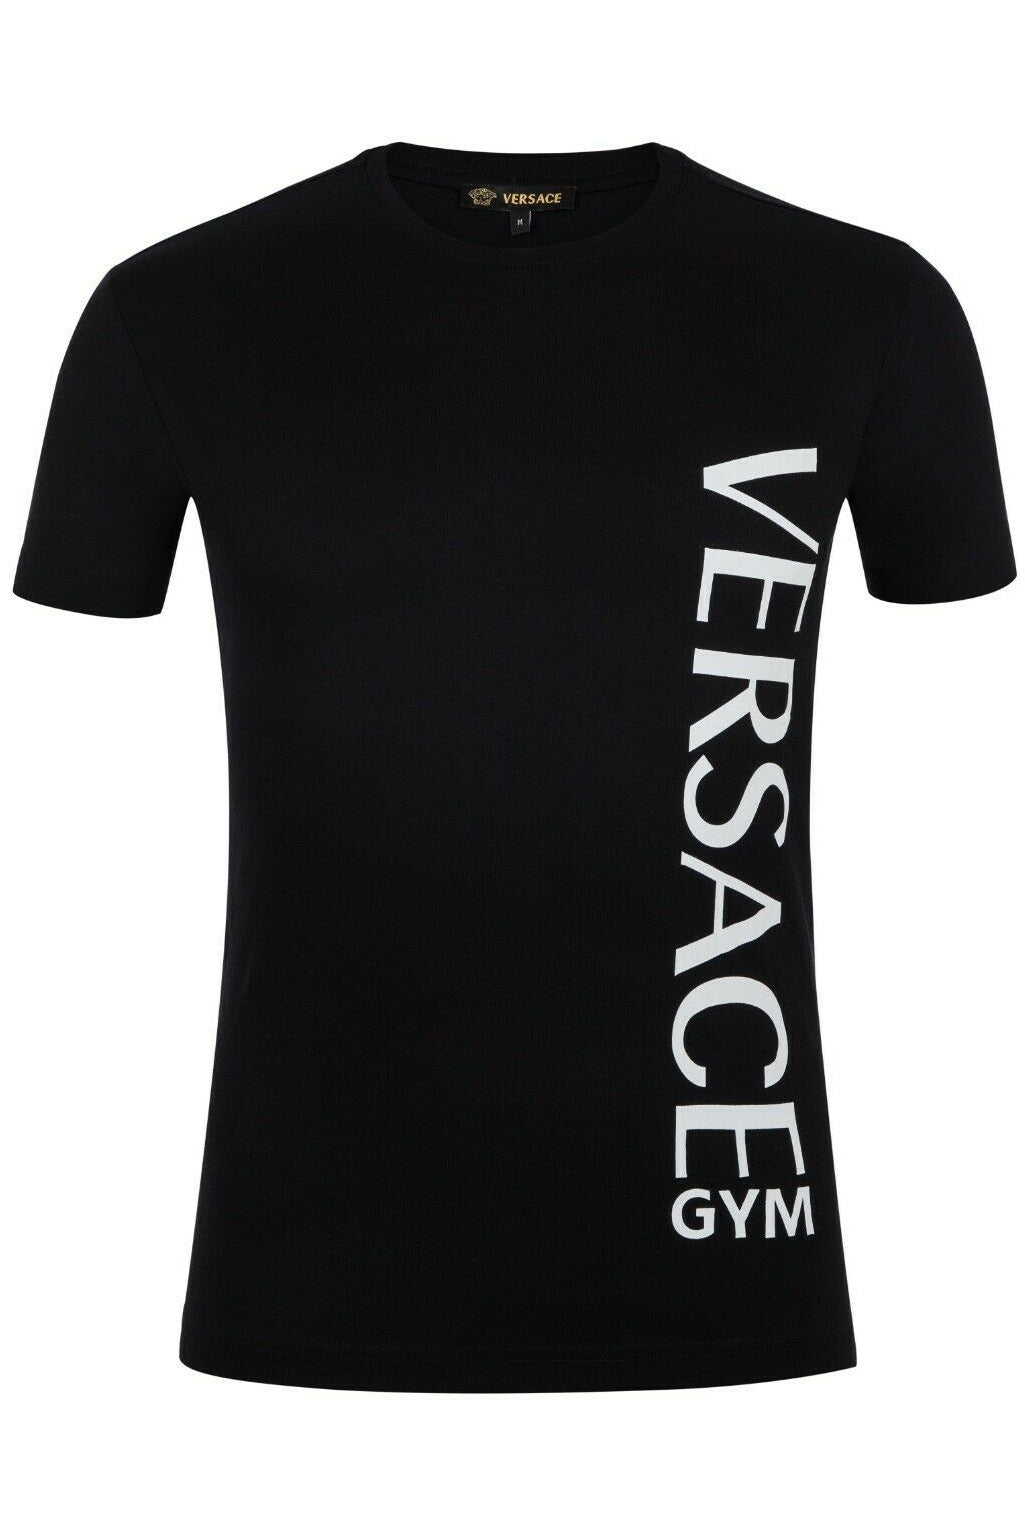 Versace Men T-Shirt Color Black 